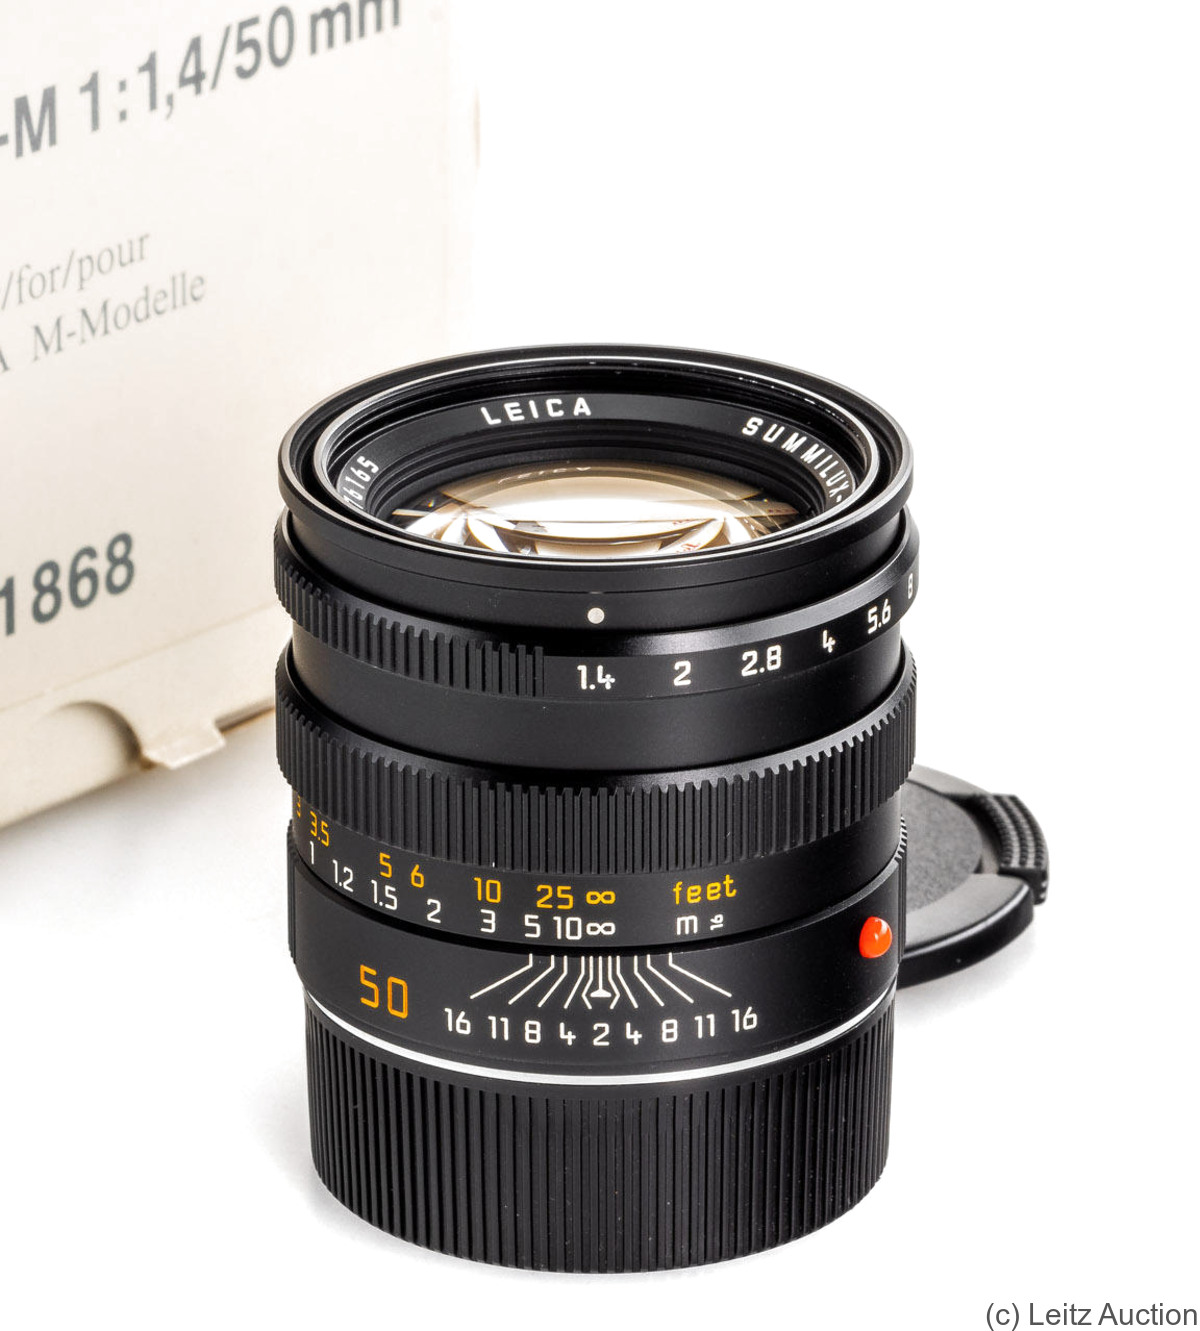 Leitz: 50mm (5cm) f1.4 Summilux-M (BM, black, 11868) camera